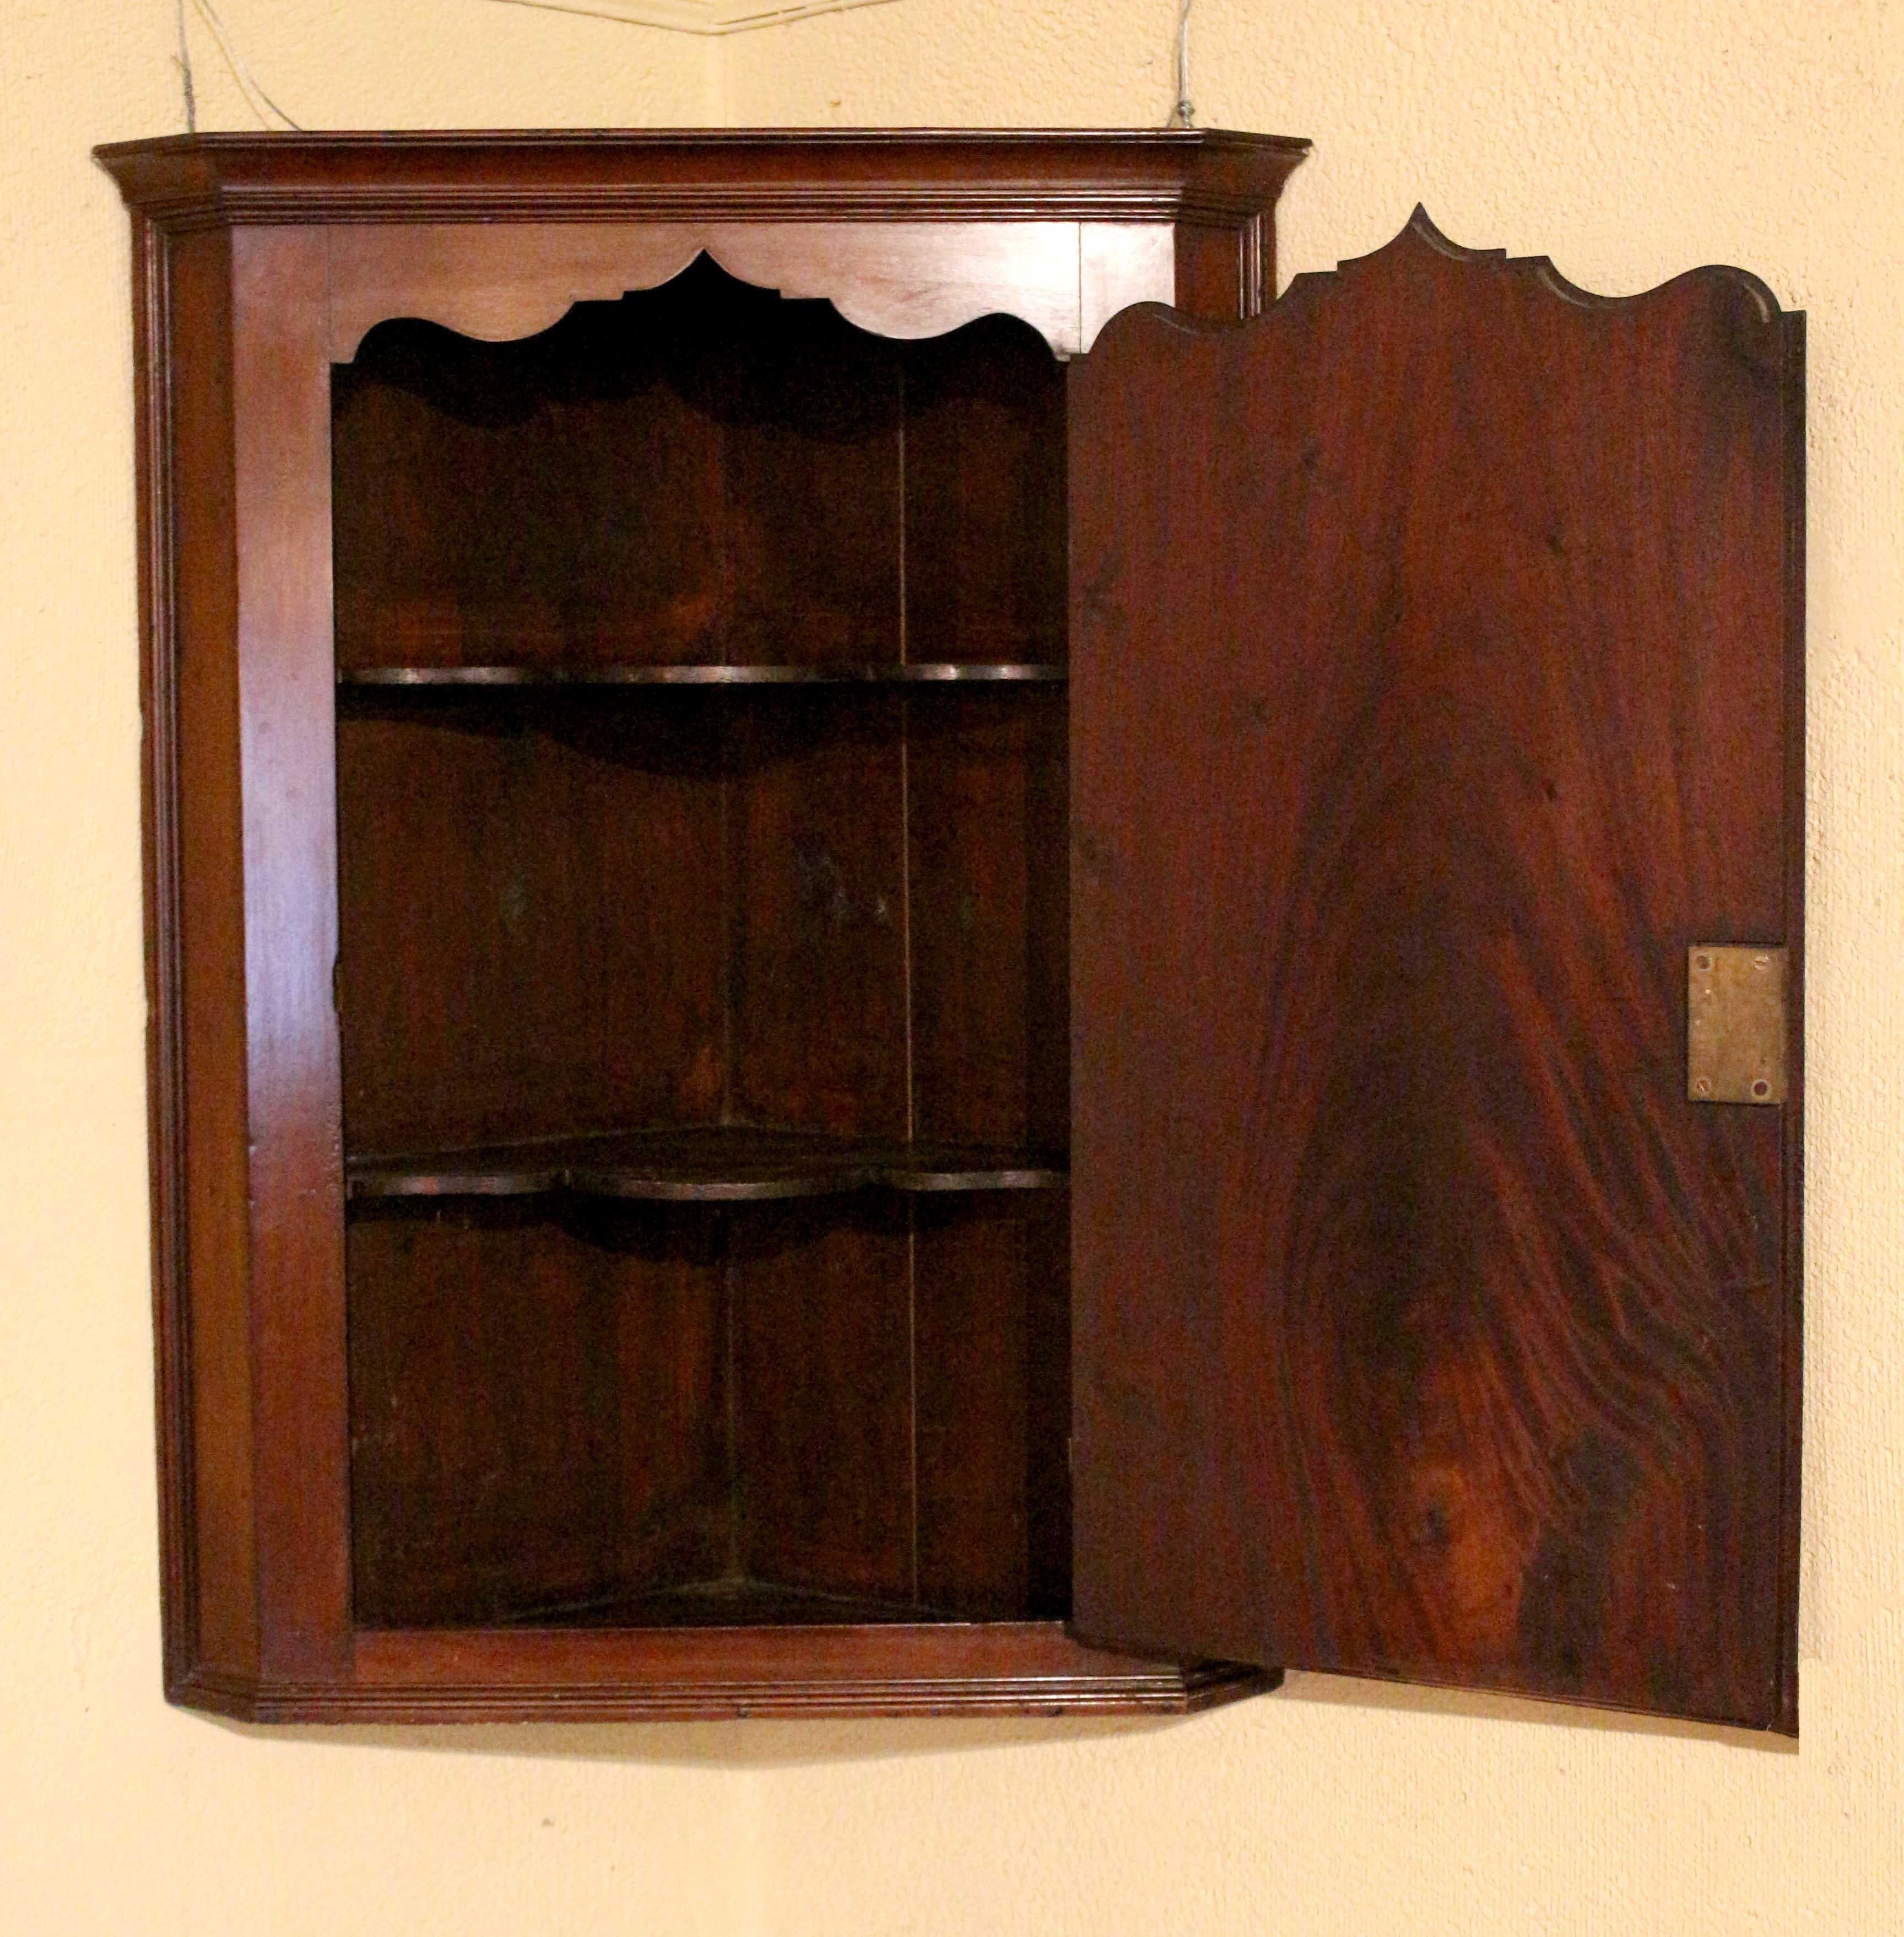 CIRCA 1800 Hänge-Eckschrank mit blinder Tür, englisch. Zeitalter von George III. Geformte Innenböden folgen der geformten Tür. Sternintarsie unter floraler Ovalintarsie. Gut geformt um das Ganze.
16 3/4